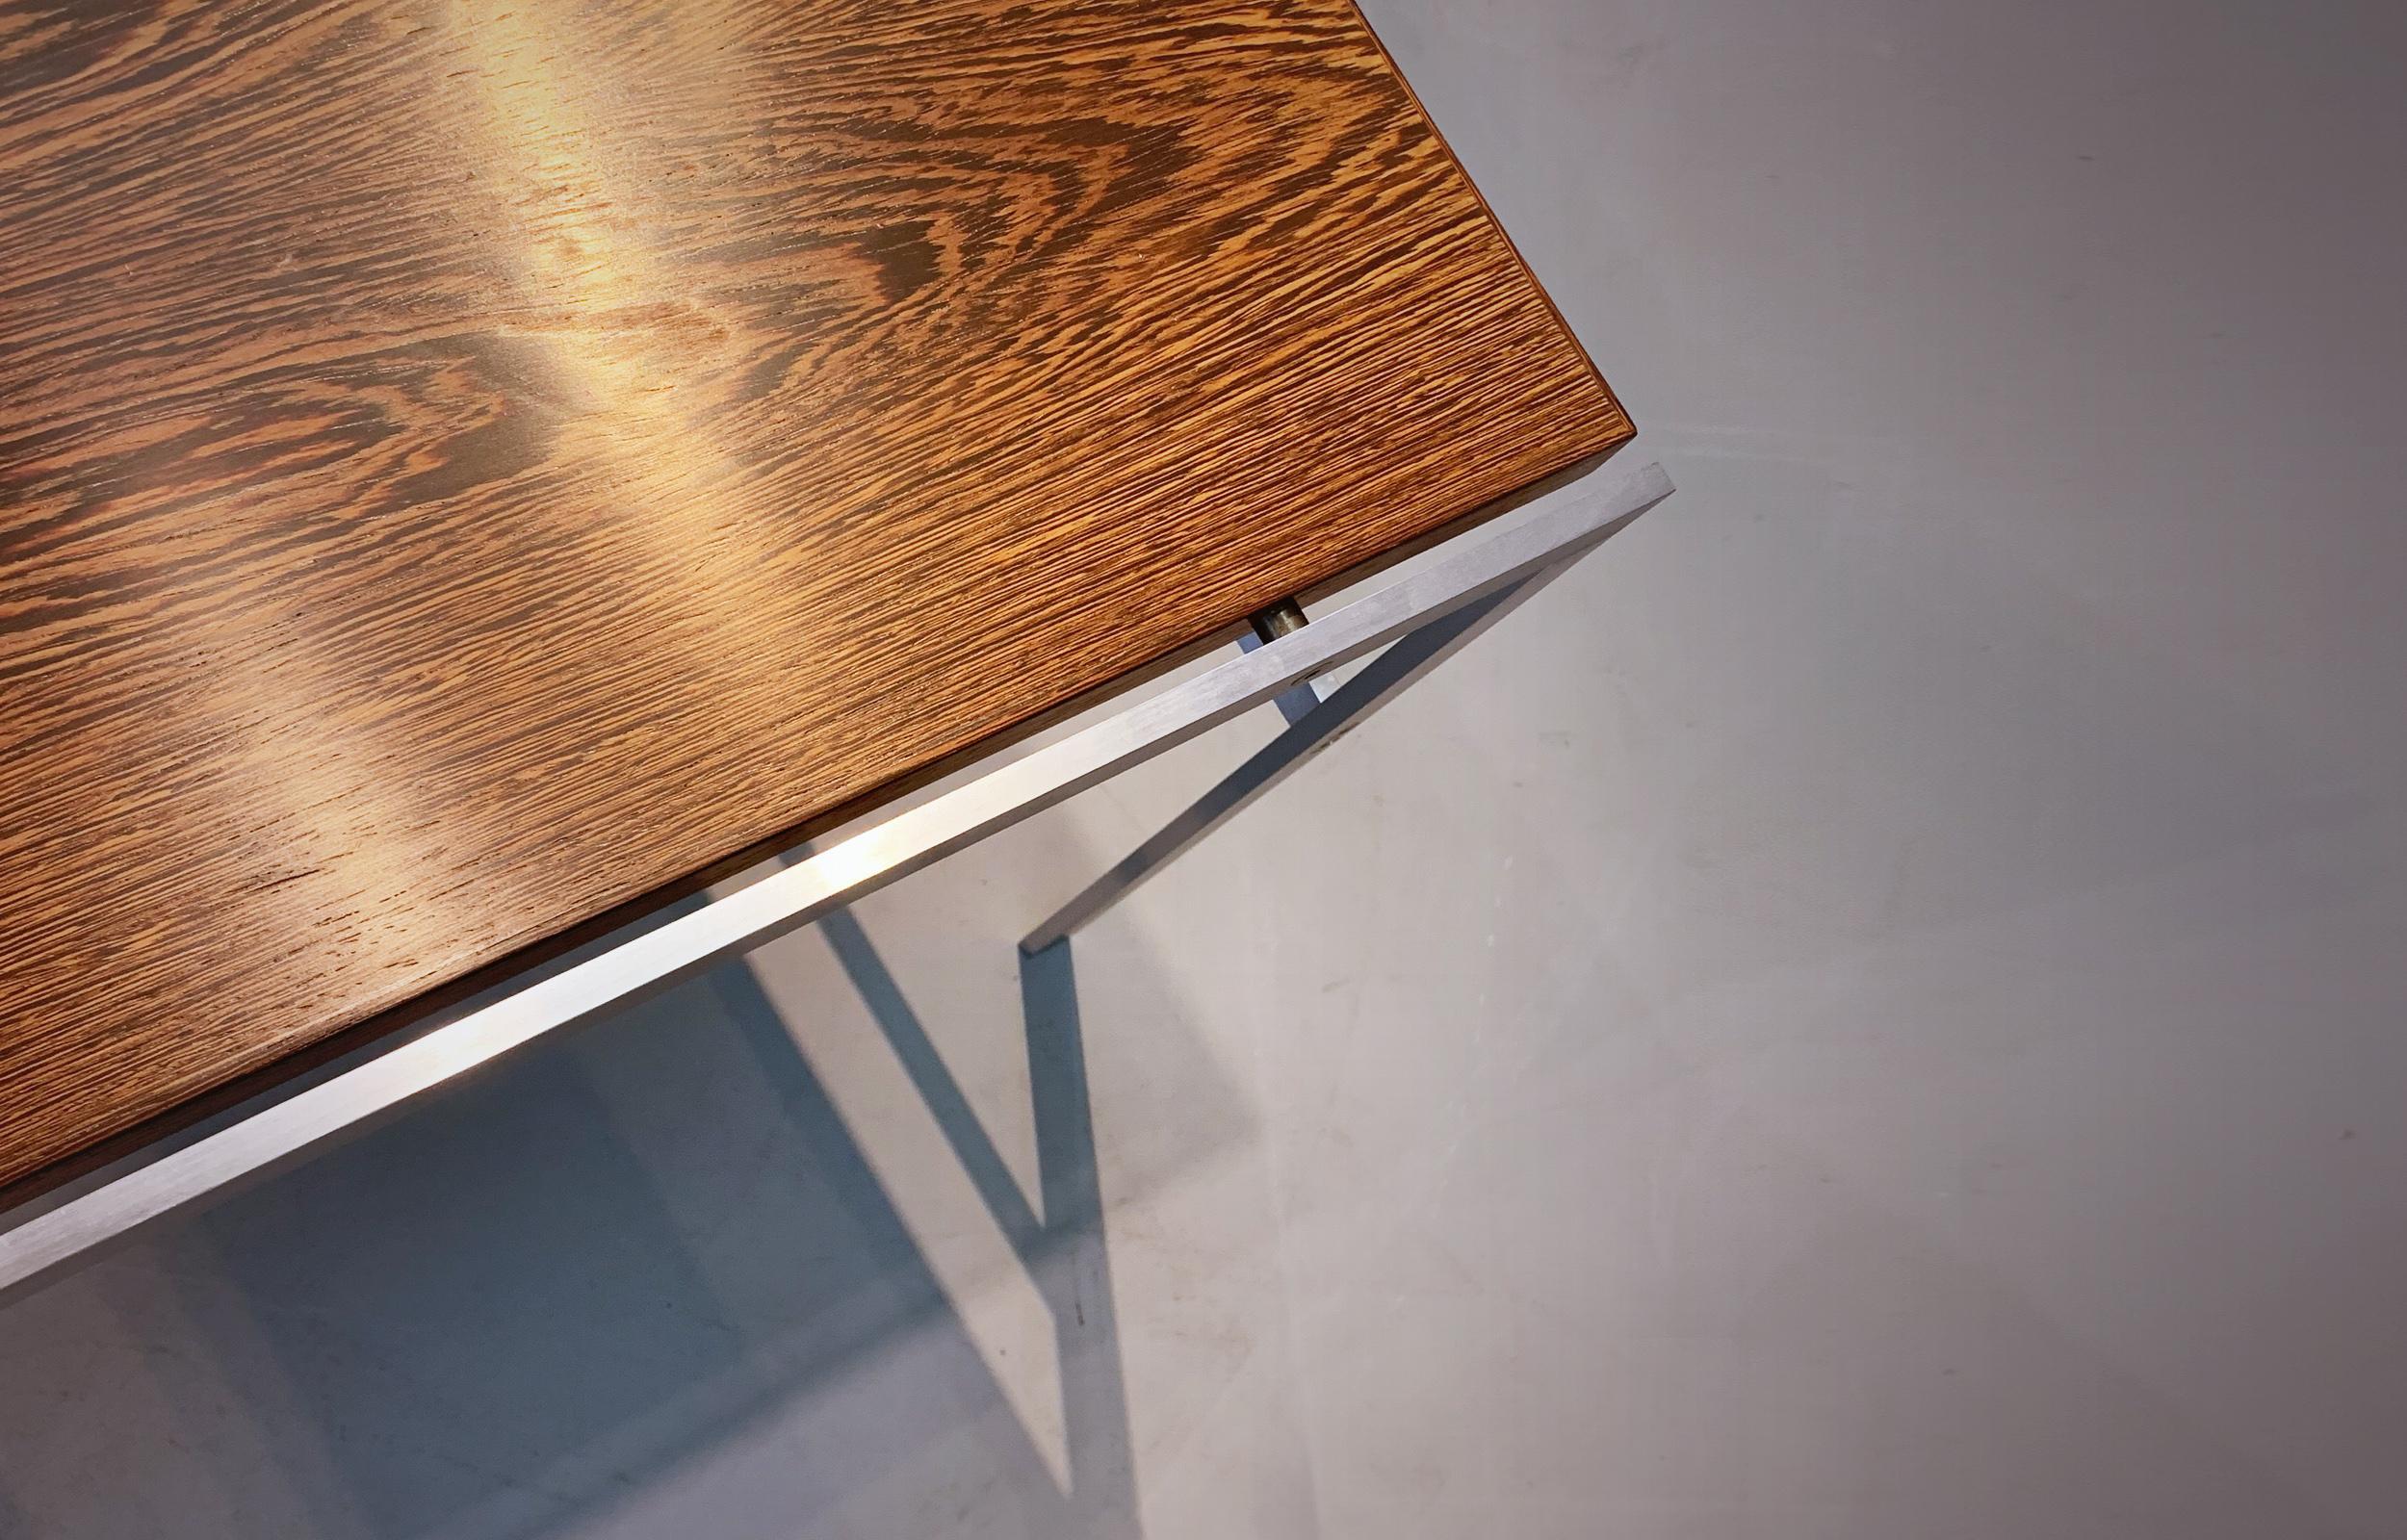 Preben Fabricius Jorgen Kastholm Beistelltisch / Couchtisch hergestellt von Bo-Ex / Dänemark in den 1960er Jahren. Tischplatte aus stark gemasertem Wengé-Holz. Sockel aus matt verchromtem Stahl. Ein wunderbarer, minimalistischer Tisch.

Perfekter